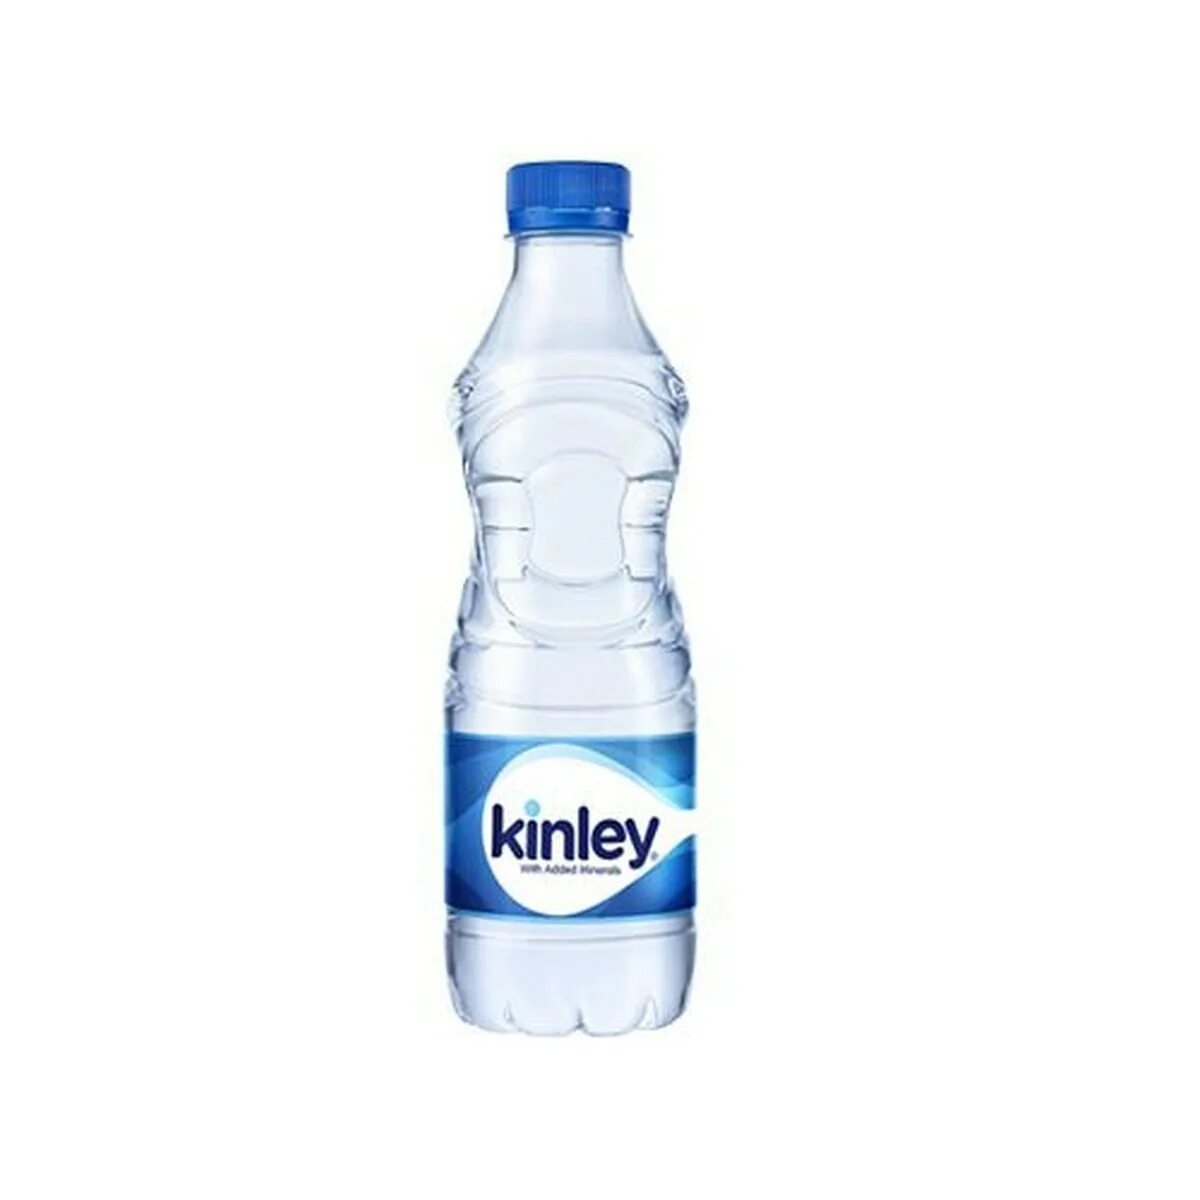 1 litre ru. Бутылка для воды. Минеральная вода в бутылках. Бутылка воды на прозрачном фоне. Kinley напиток.